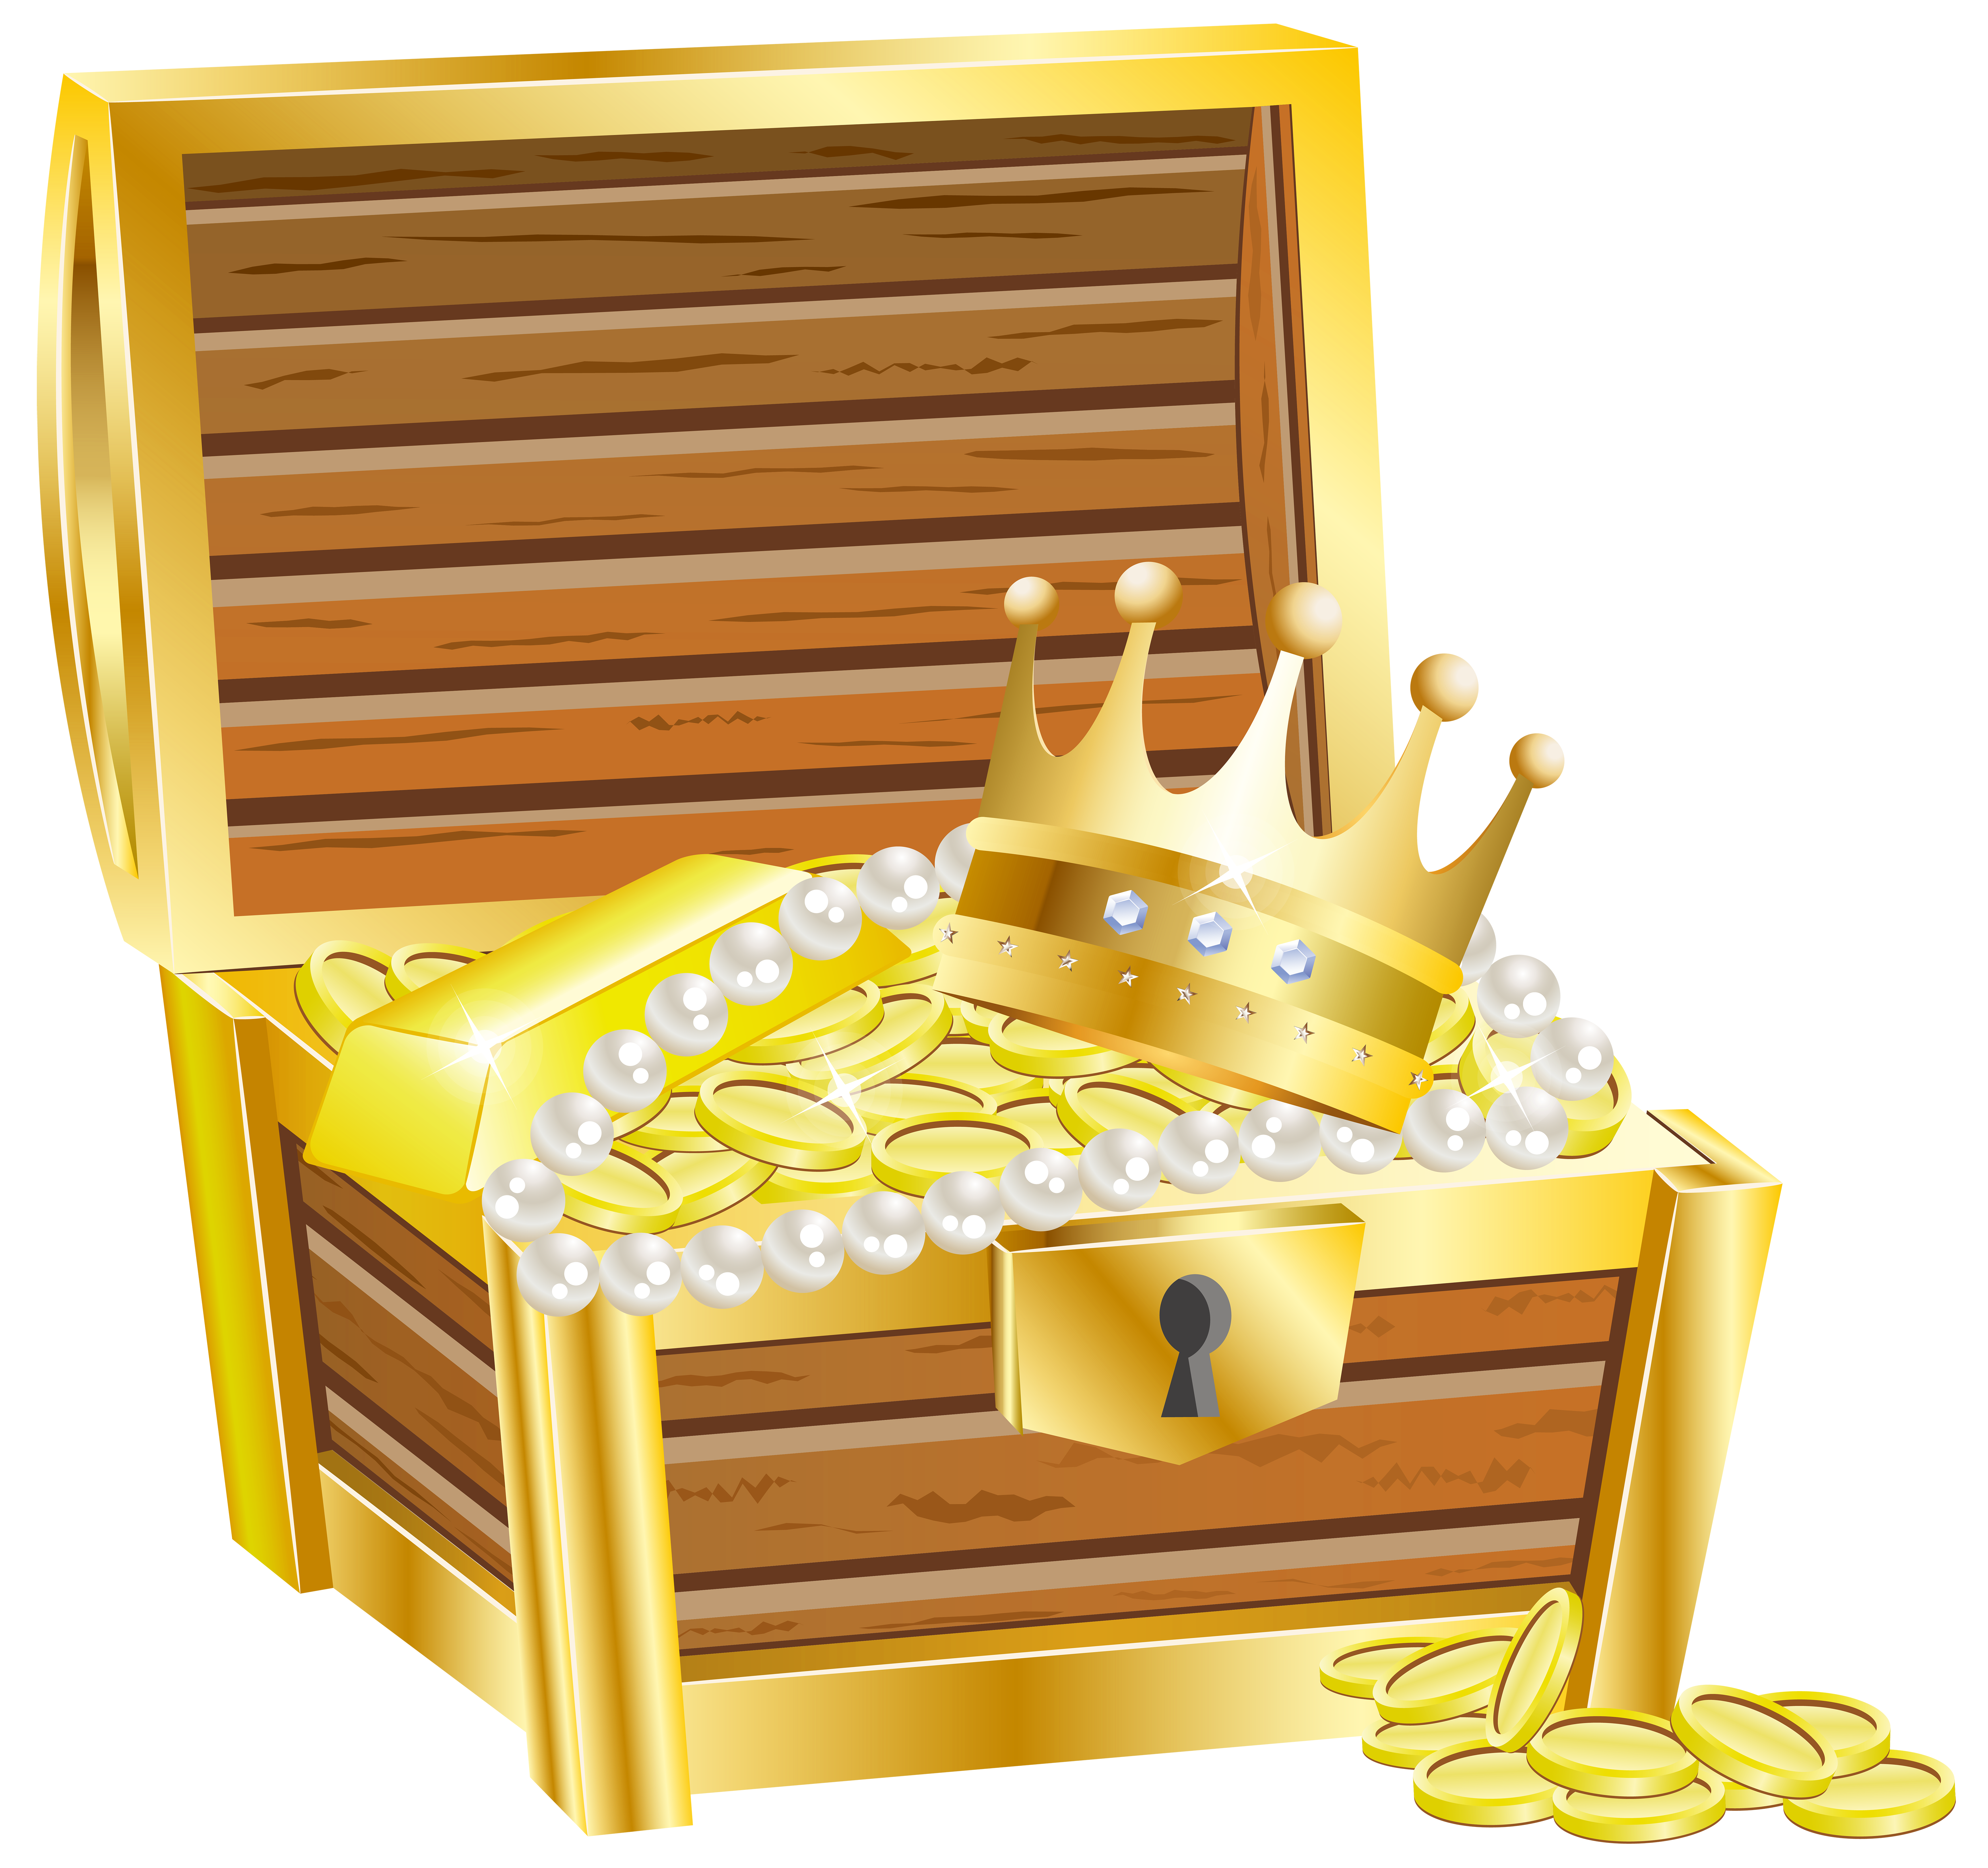 island clipart treasure chest